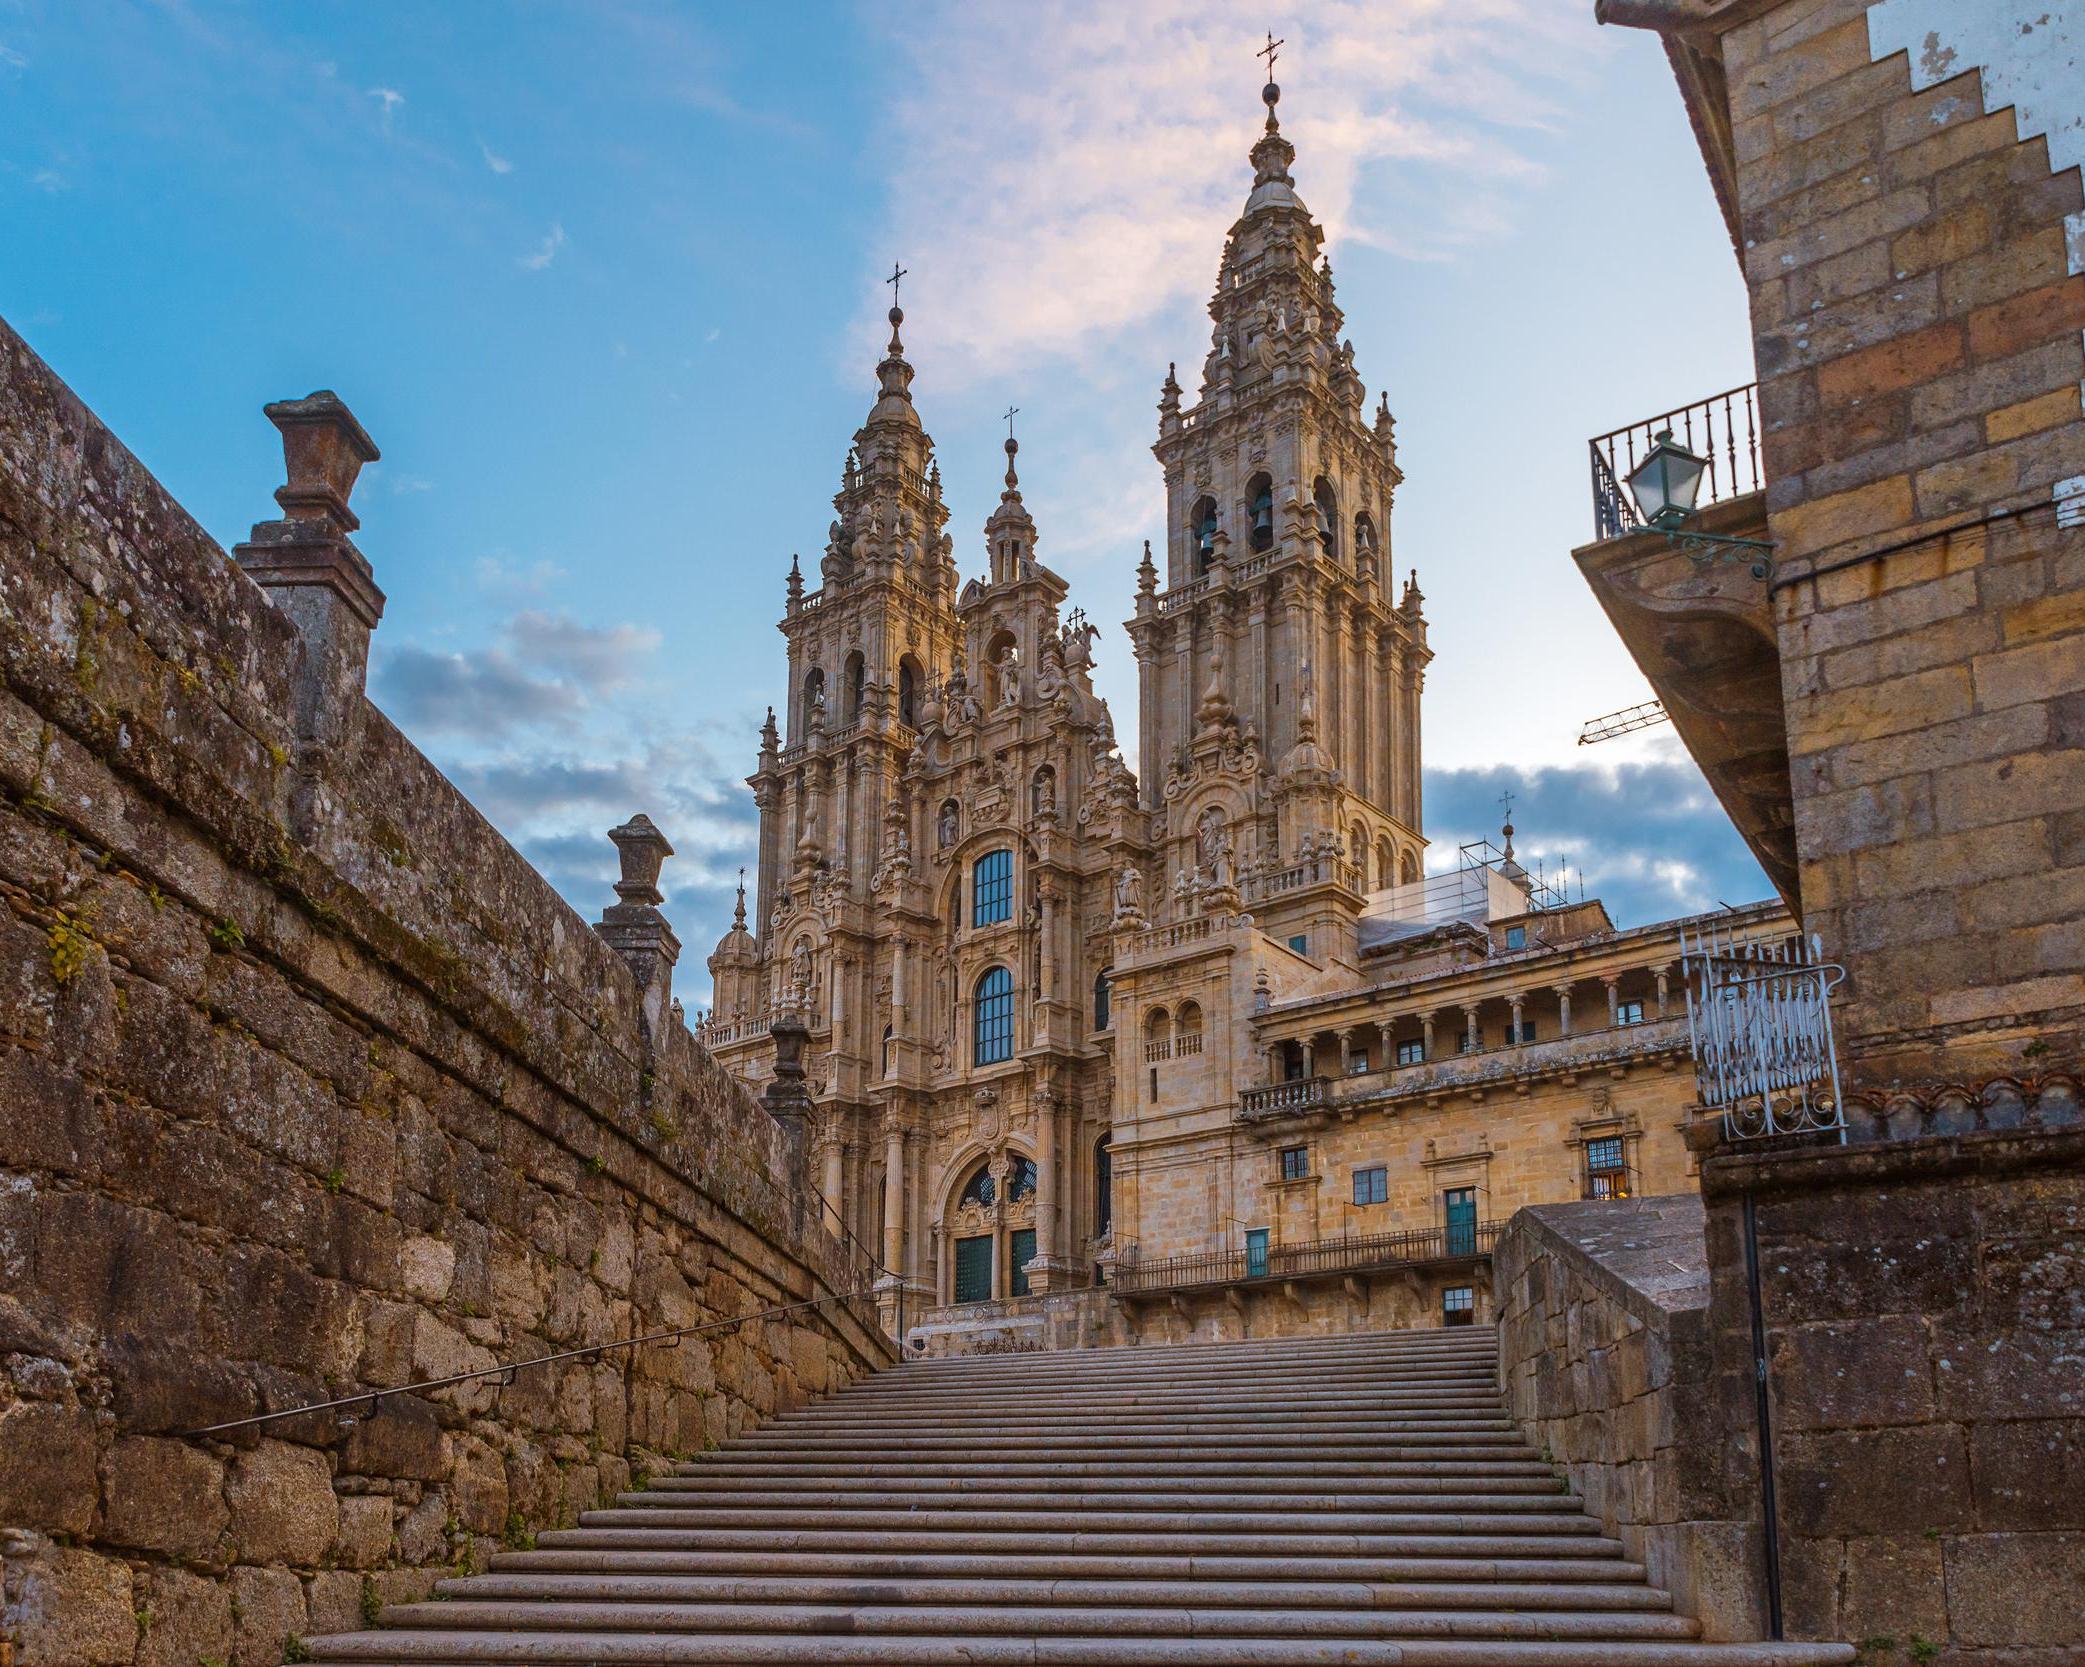 ¡Buen camino peregrino! Descubre Santiago de Compostela.